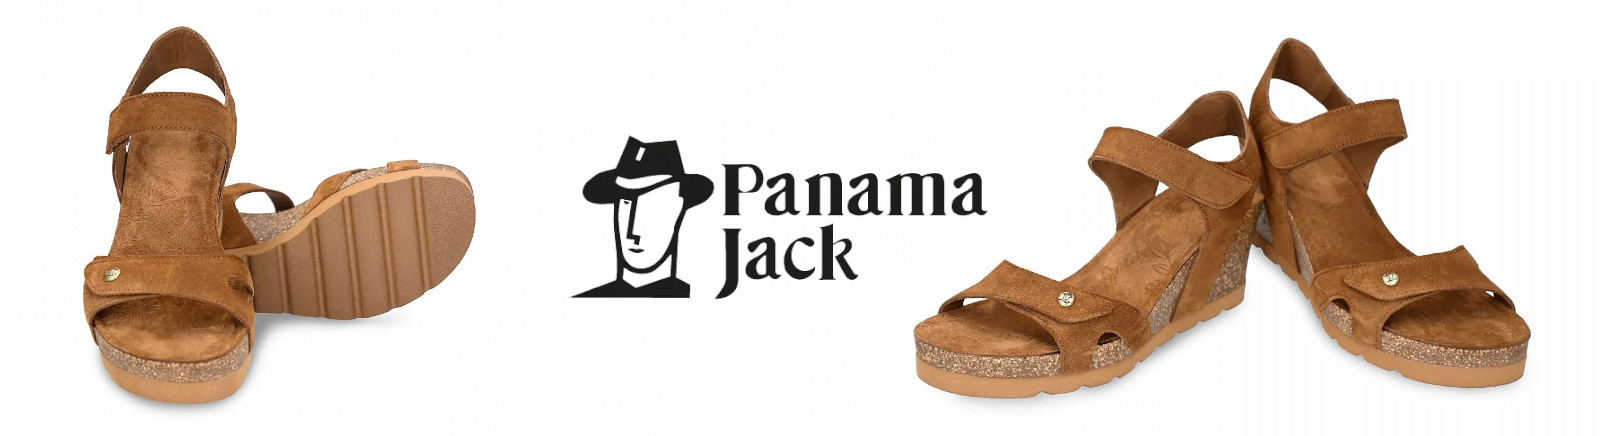 Panama Jack Damenschuhe online entdecken im Juppen Schuhe Shop